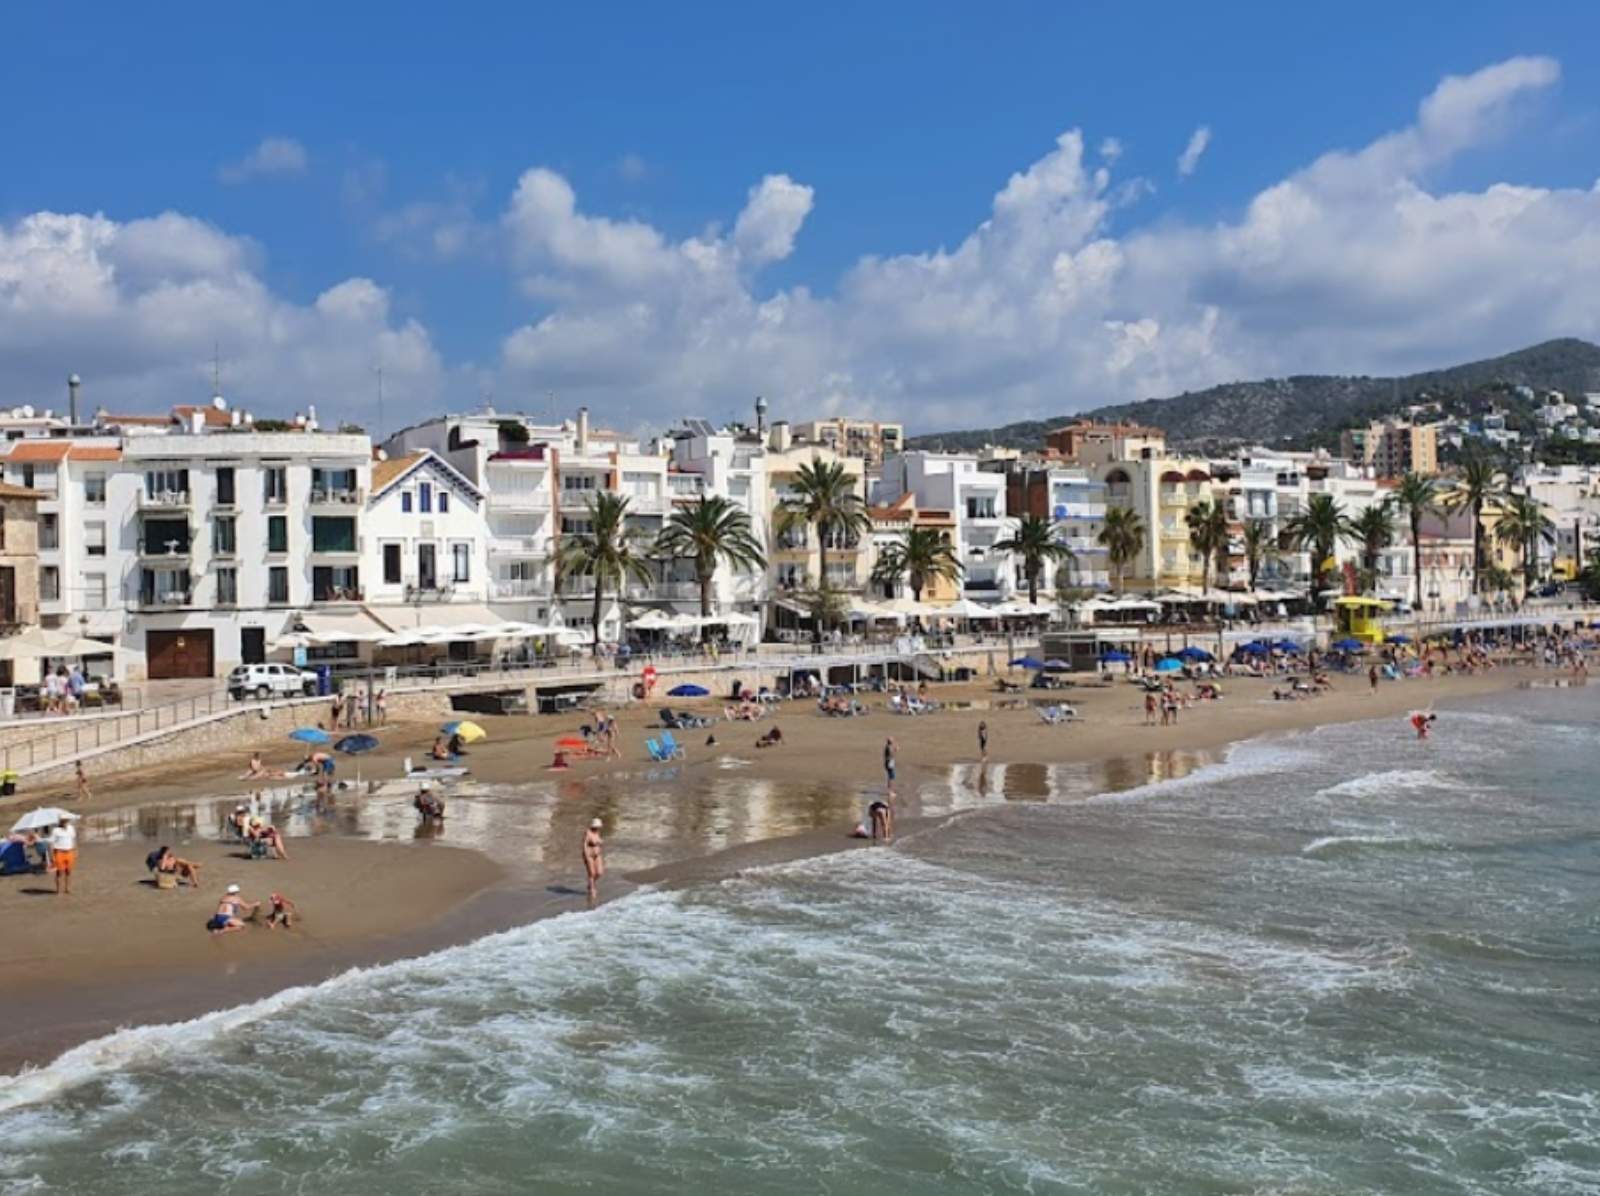 Aparece un cadáver flotando en la playa en Sitges: la policía investiga quién es y qué ha pasado